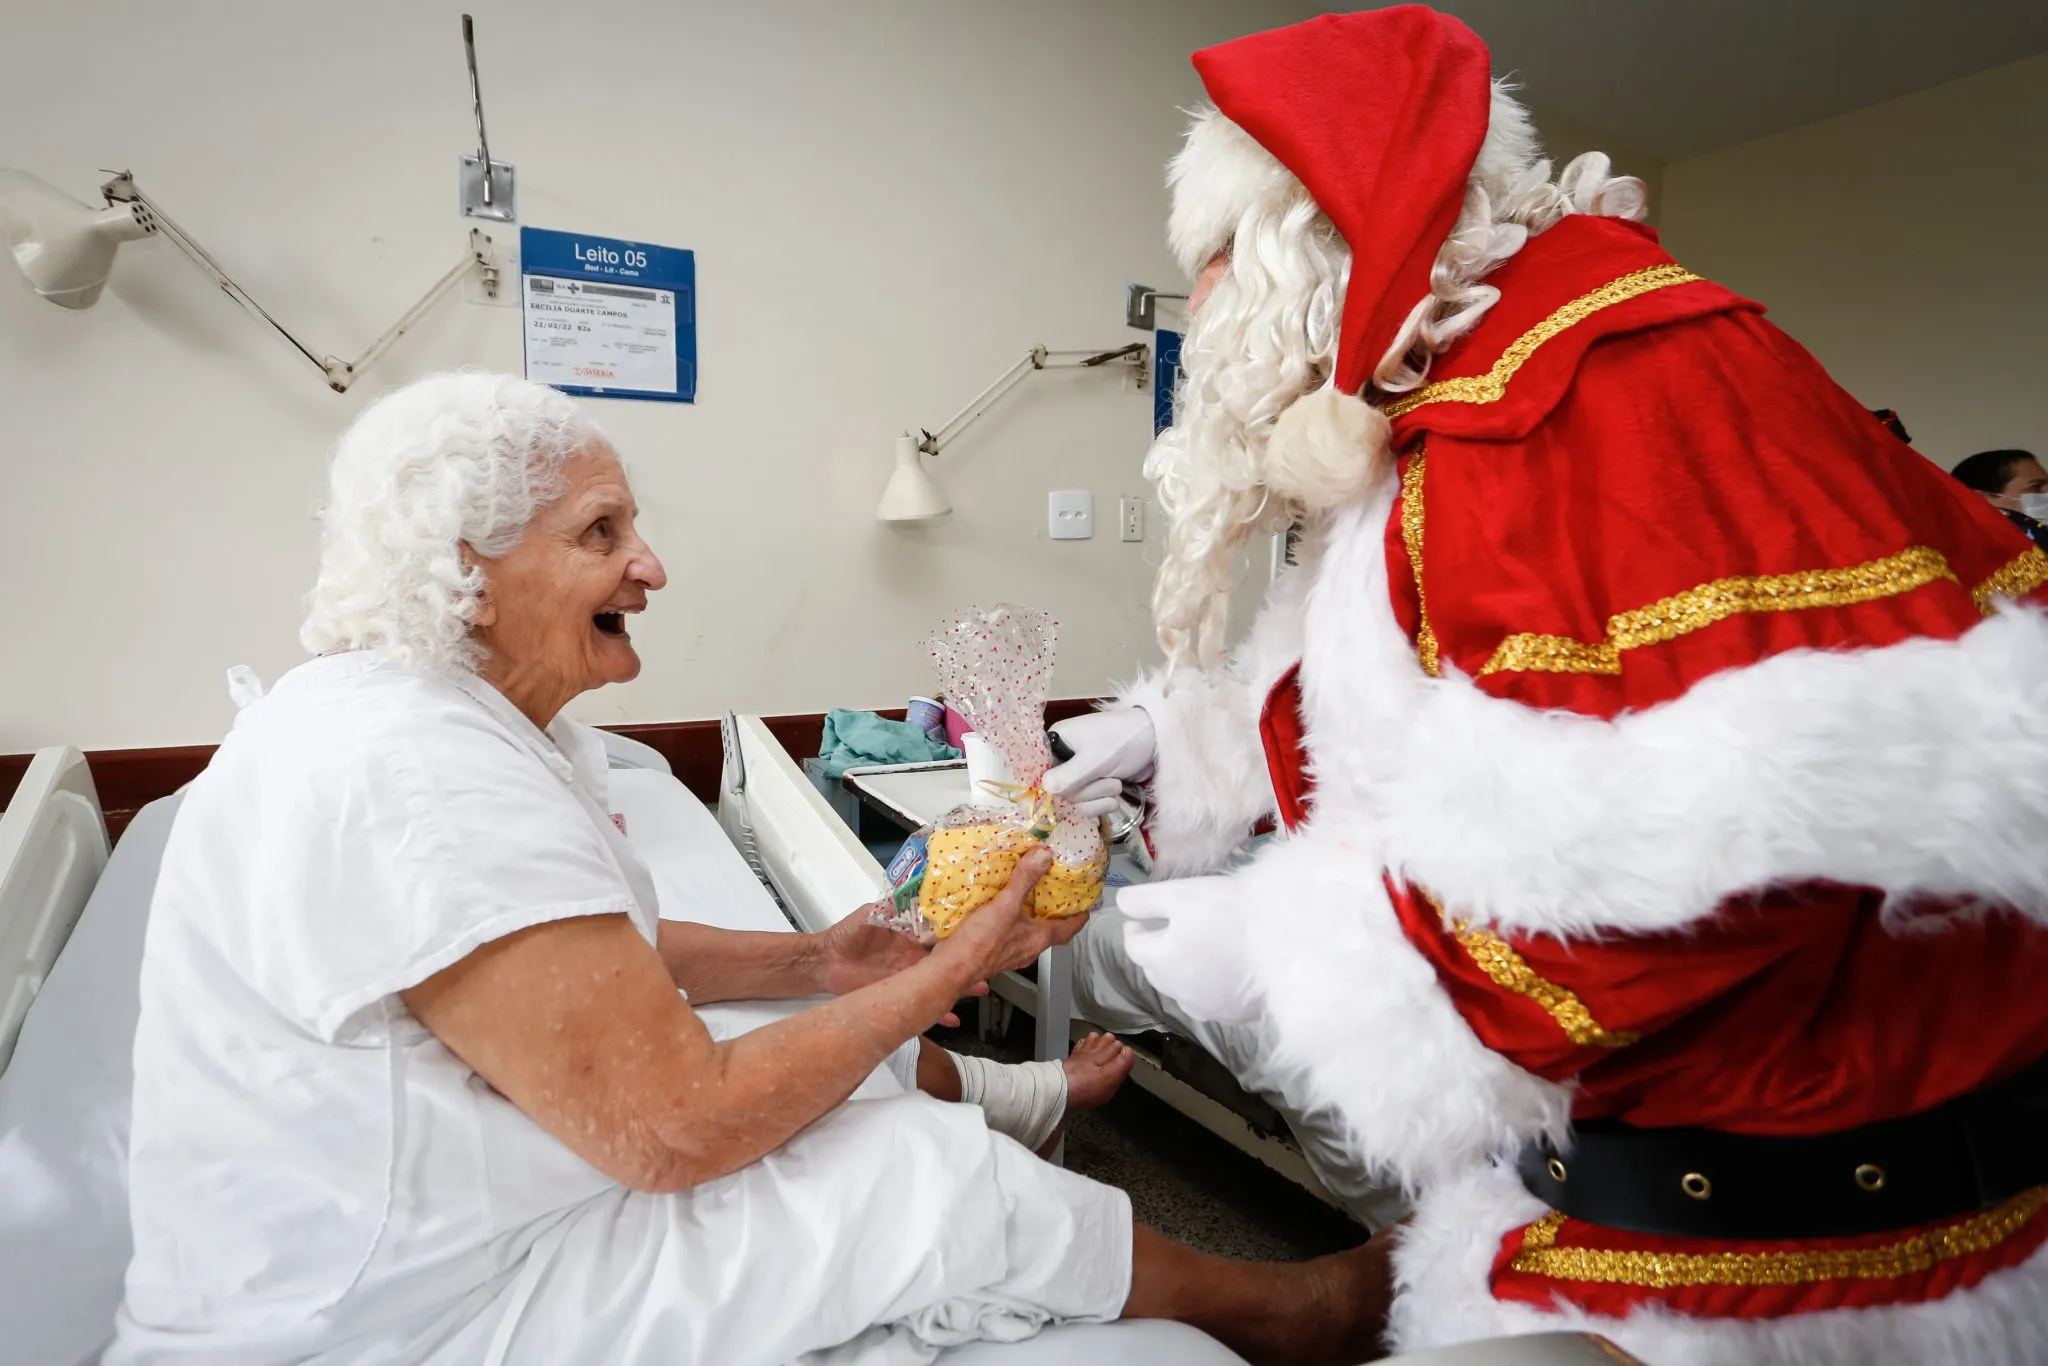 Na ala na geriatria, o Bom Velhinho arrancou sorrisos e levou leveza aos pacientes